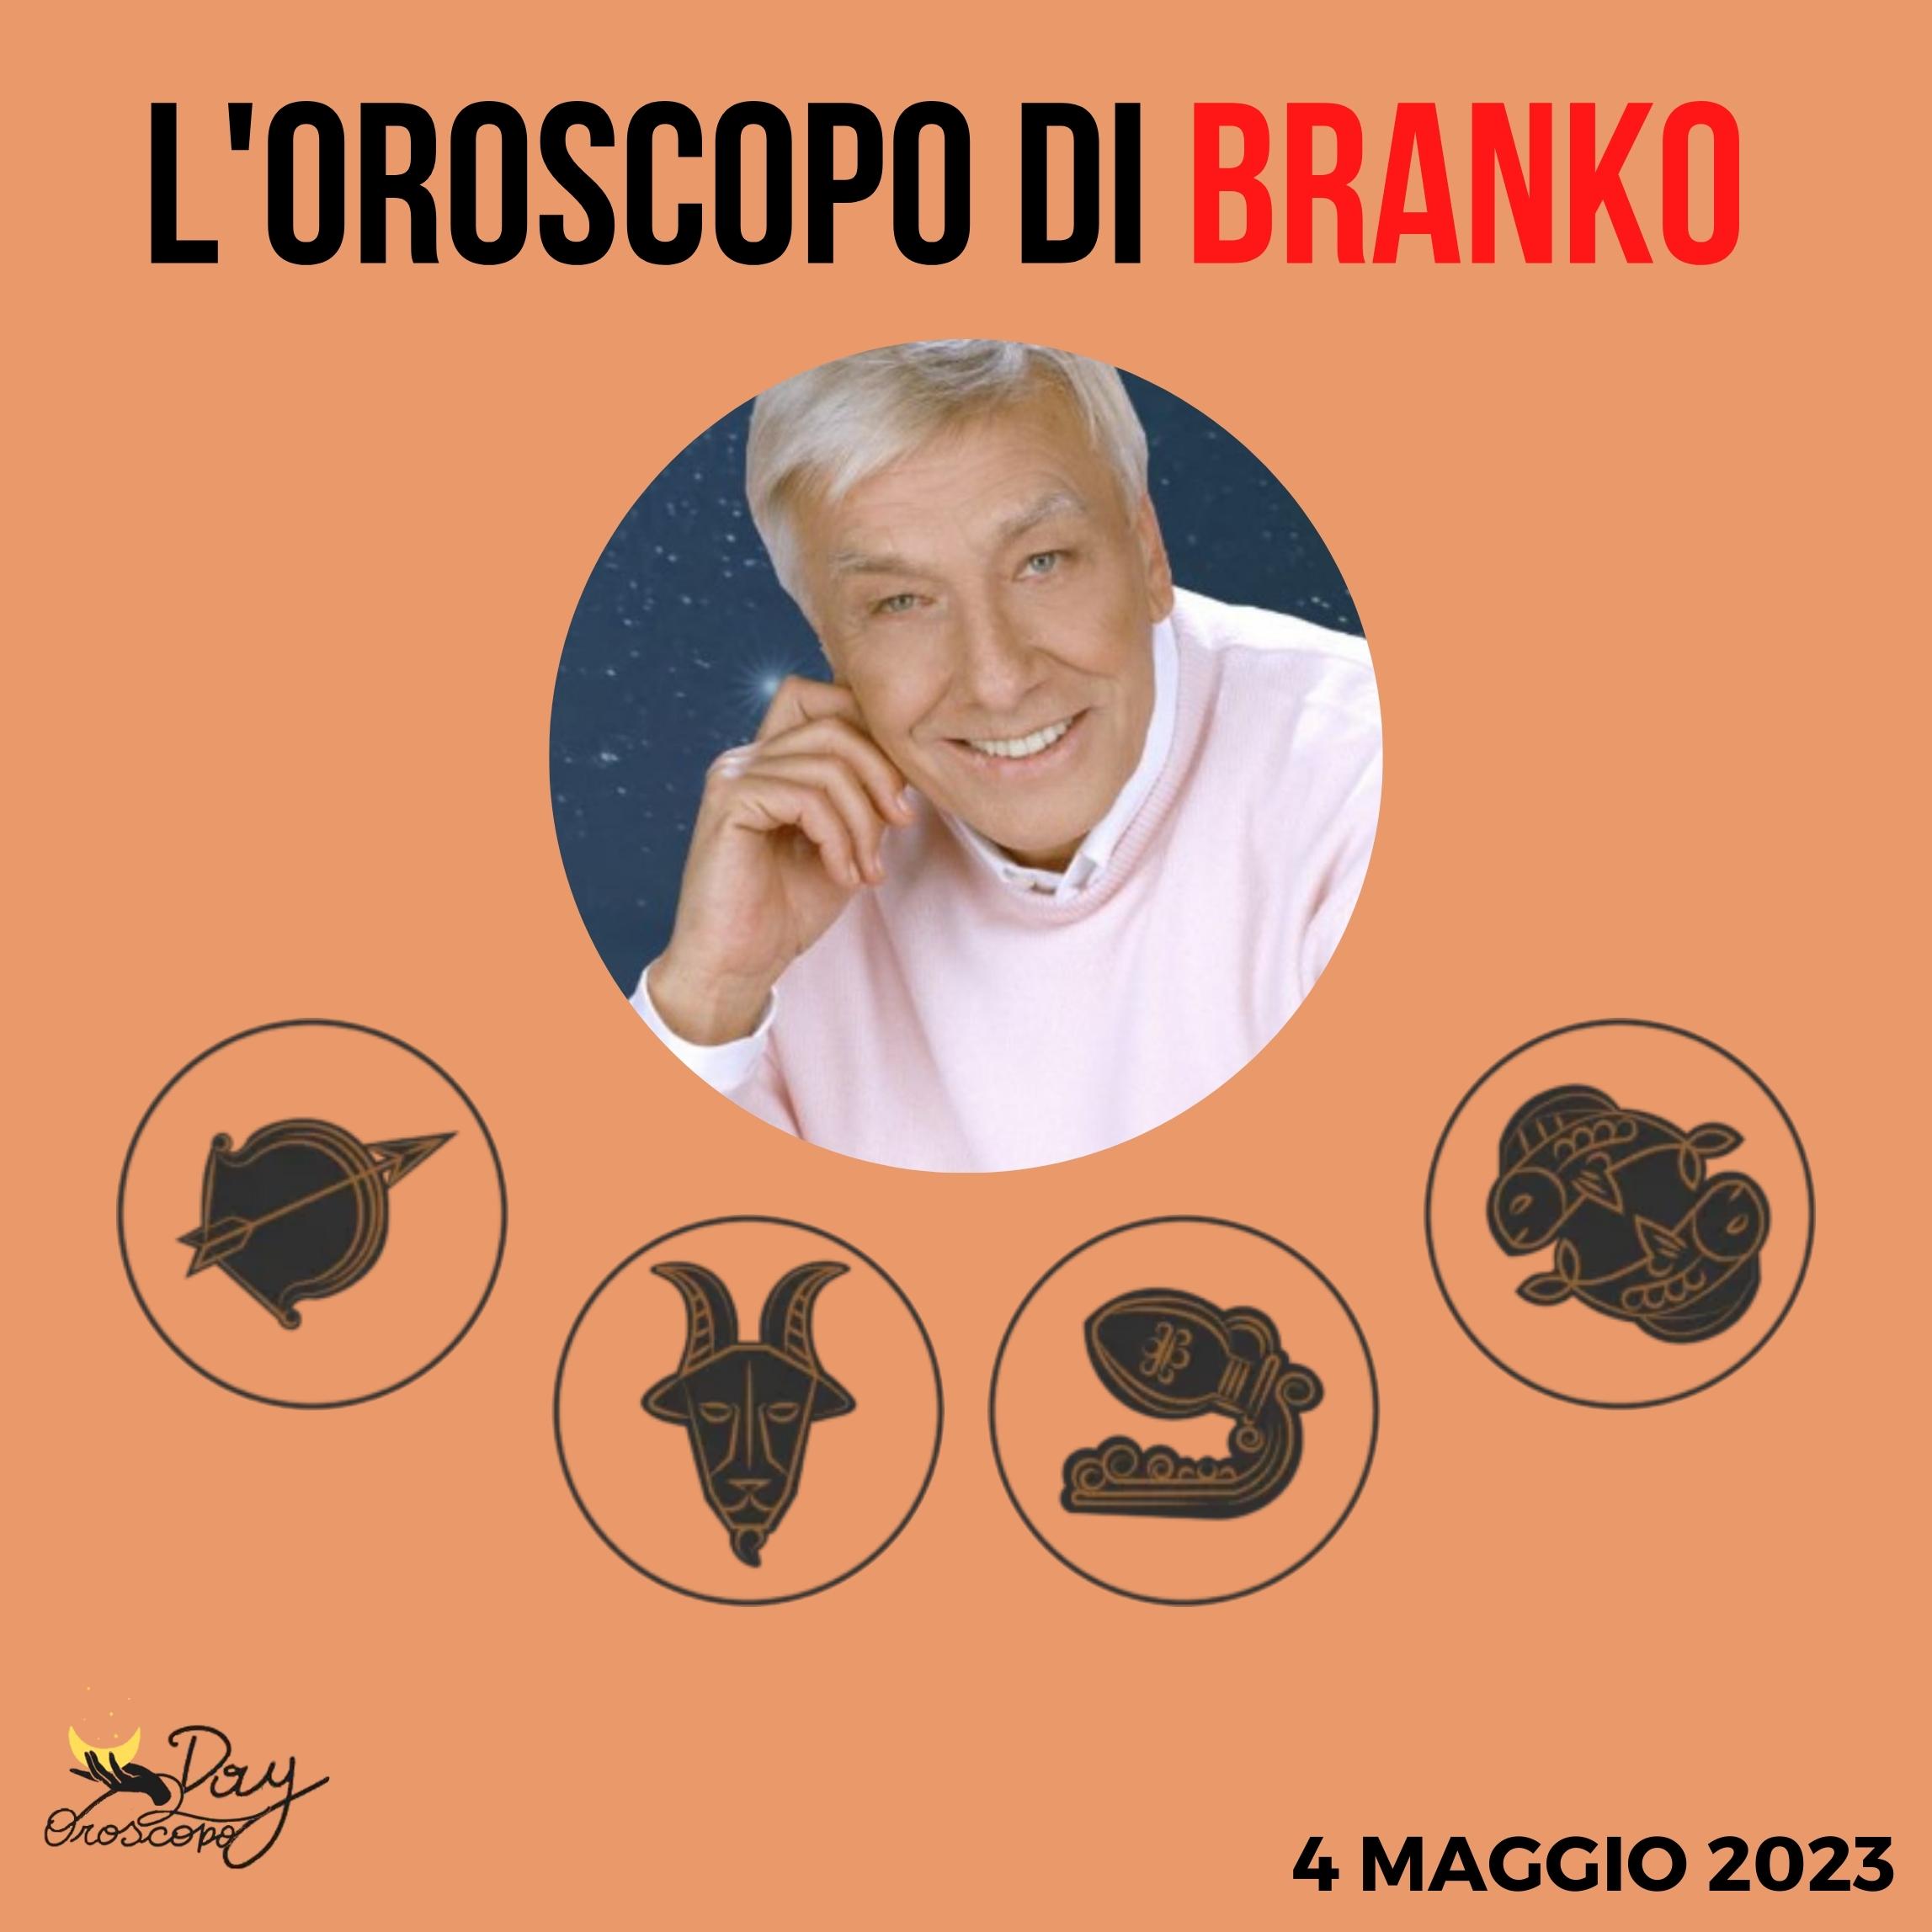 Oroscopo oggi domani Branko 4 maggio Sagittario Capricorno Acquario Pesci